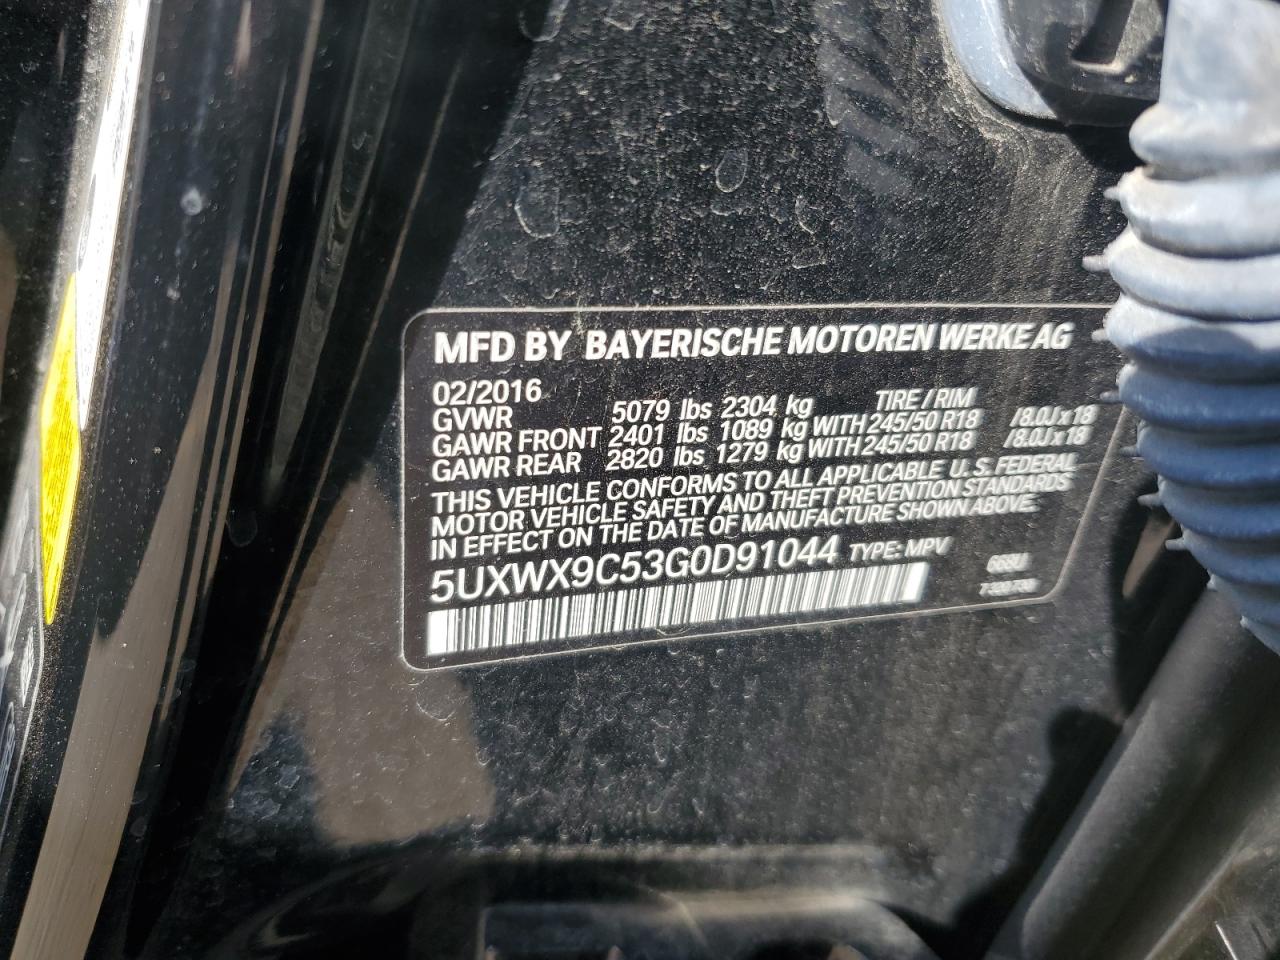 2016 BMW X3 XDRIVE2 2.0L  4(VIN: 5UXWX9C53G0D91044